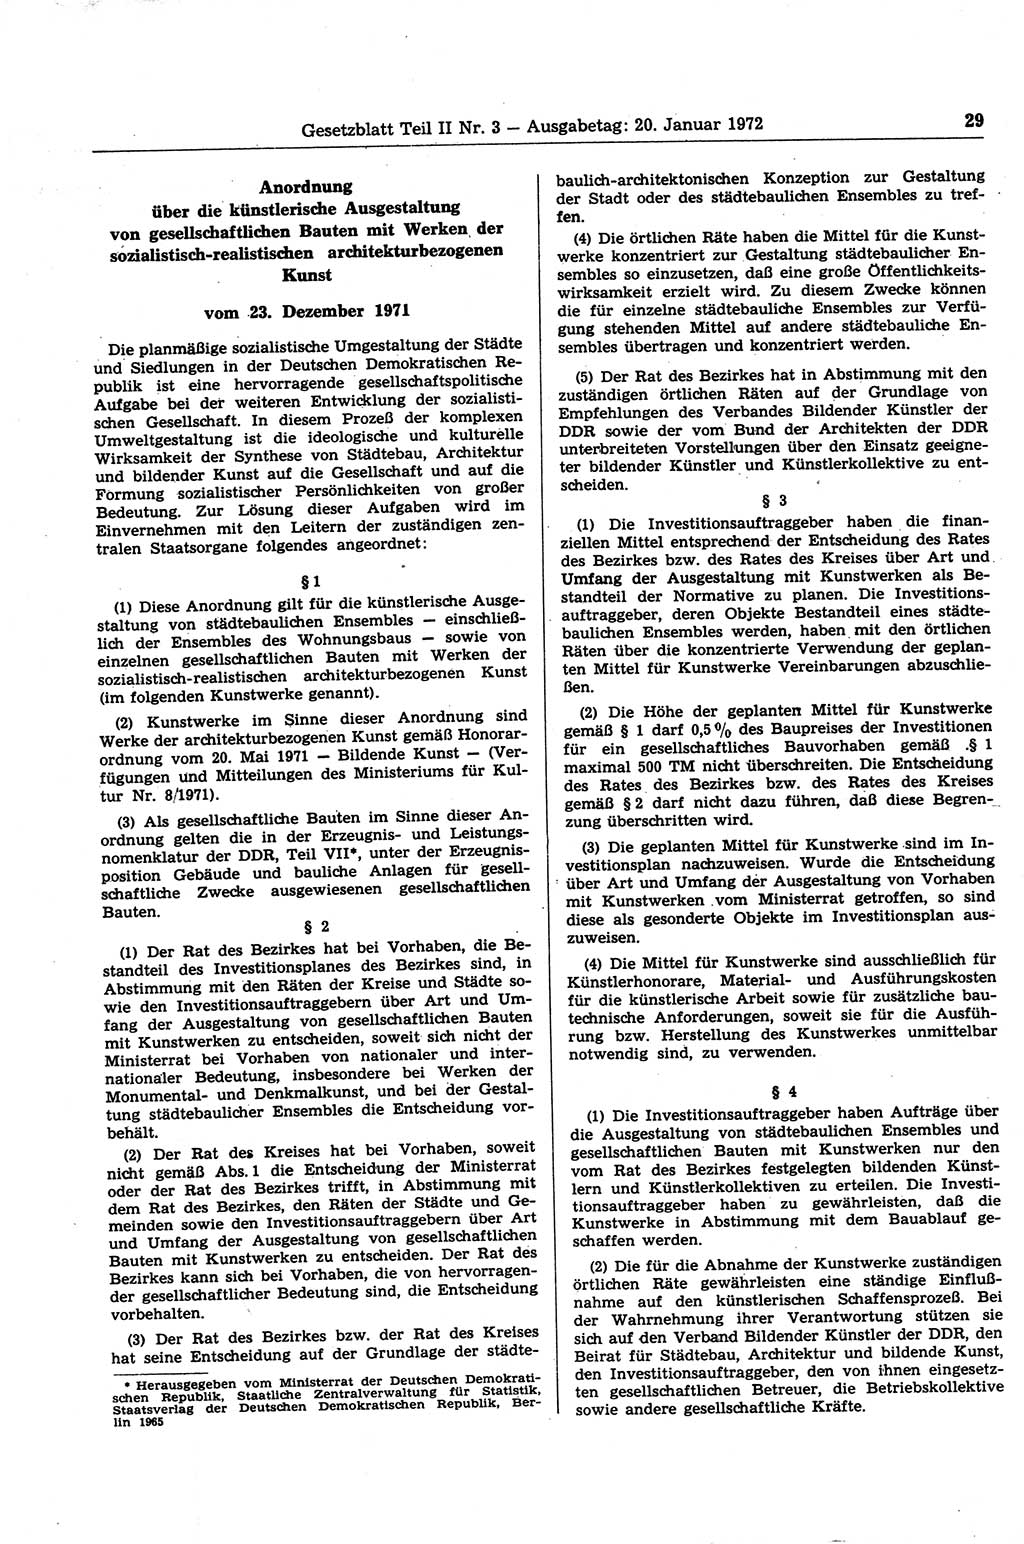 Gesetzblatt (GBl.) der Deutschen Demokratischen Republik (DDR) Teil ⅠⅠ 1972, Seite 29 (GBl. DDR ⅠⅠ 1972, S. 29)